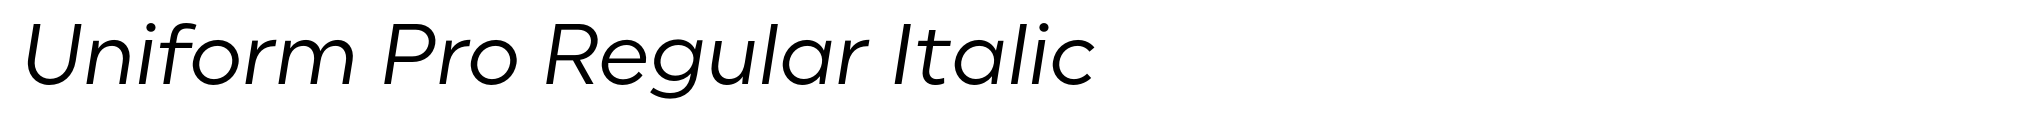 Uniform Pro Regular Italic image